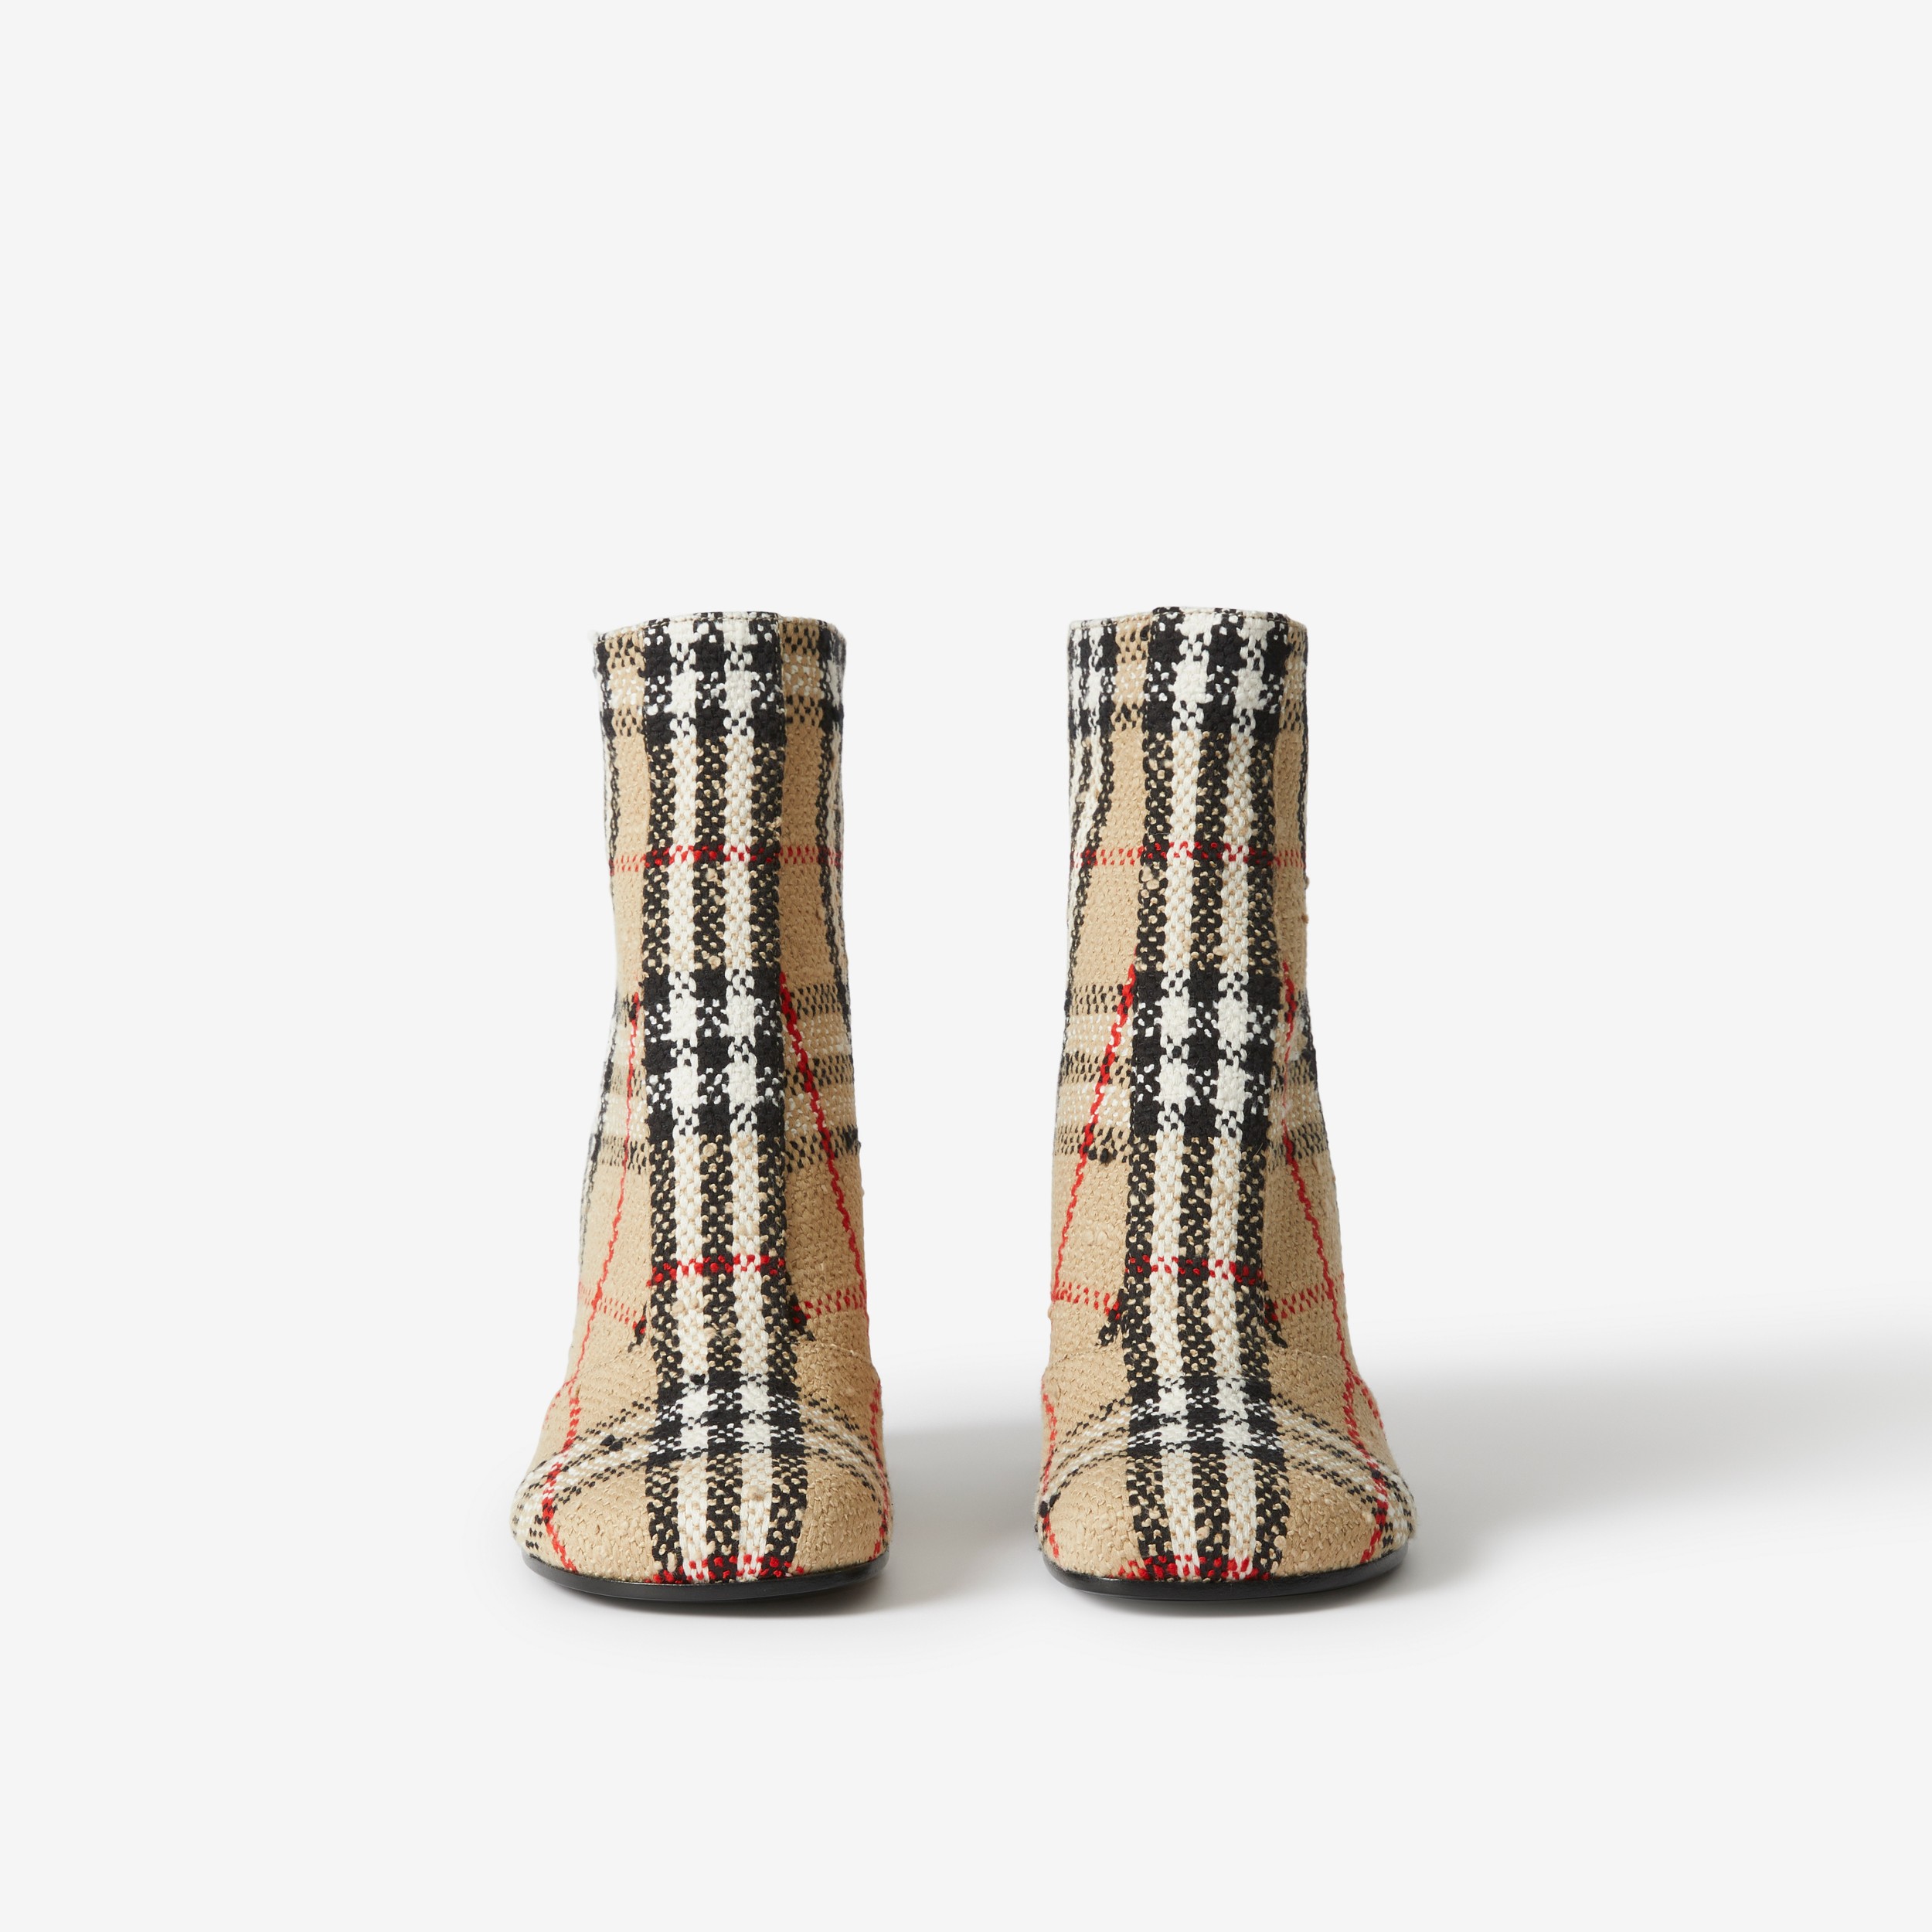 Ankle boots em Vintage Check Bouclé (Bege Clássico) - Mulheres | Burberry® oficial - 2